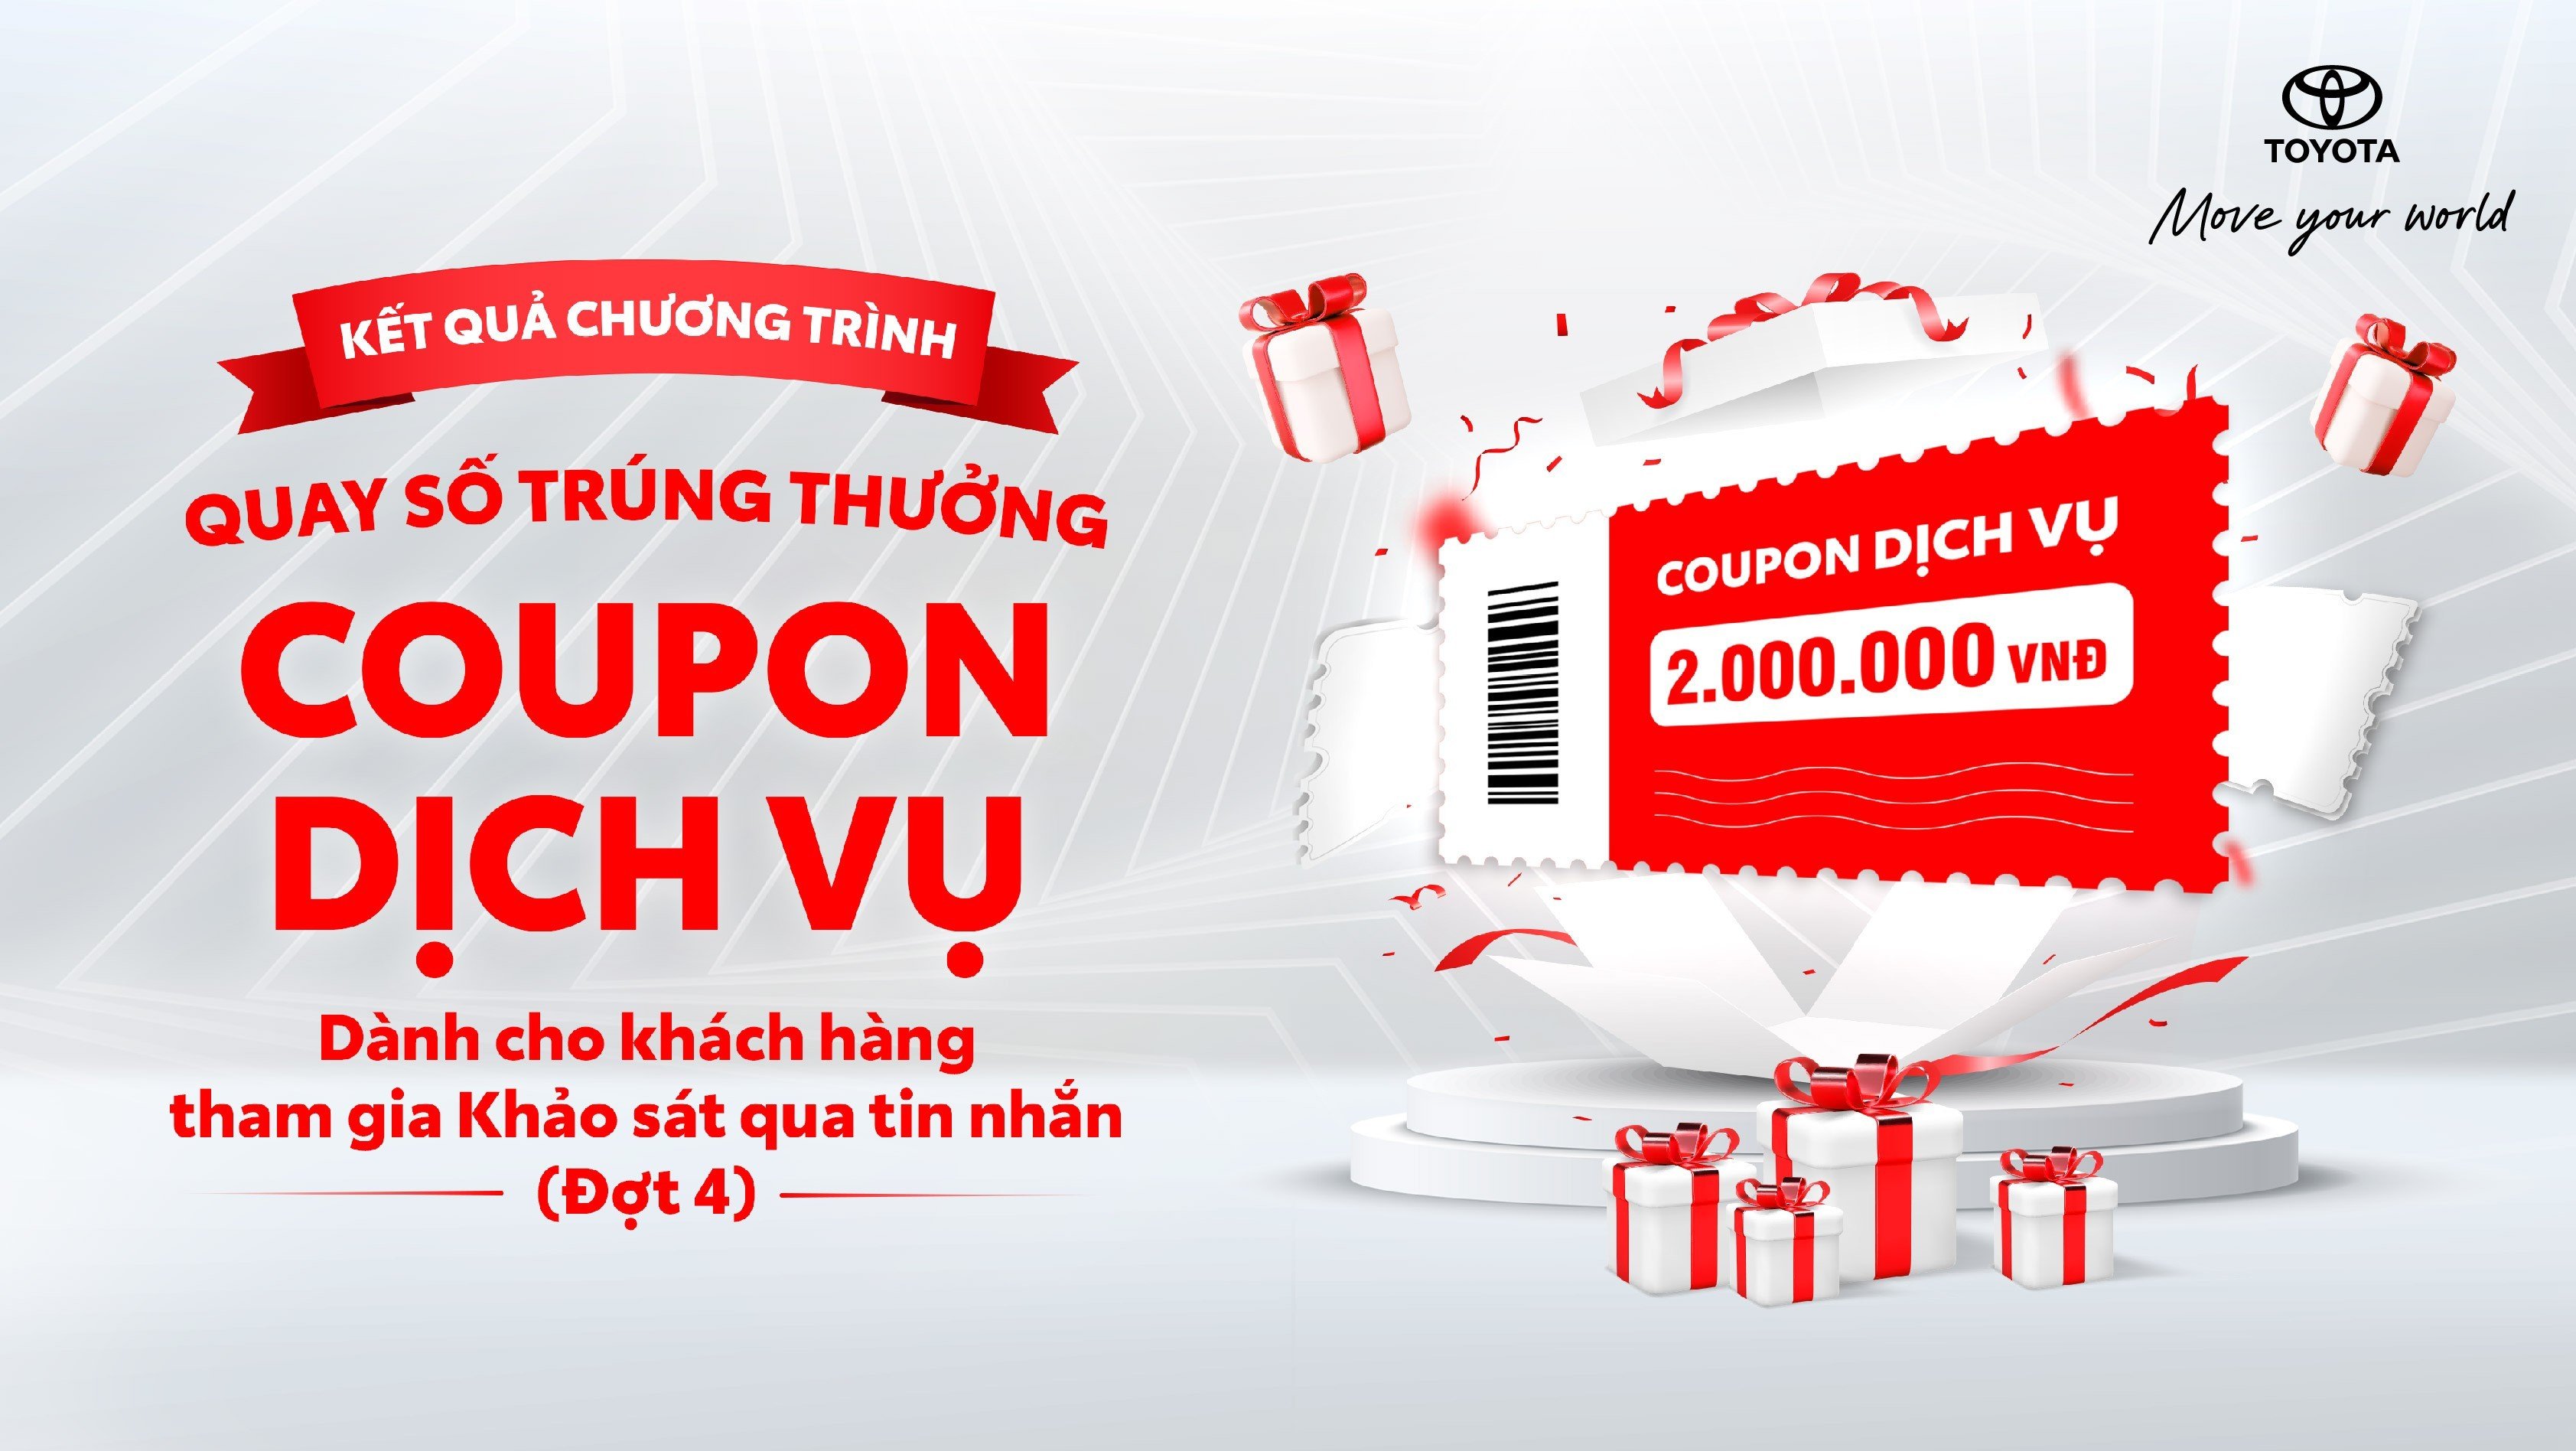 Toyota Việt Nam thông báo kết quả quay số trúng thưởng coupon dịch vụ cho khách hàng làm khảo sát qua tin nhắn đợt 4